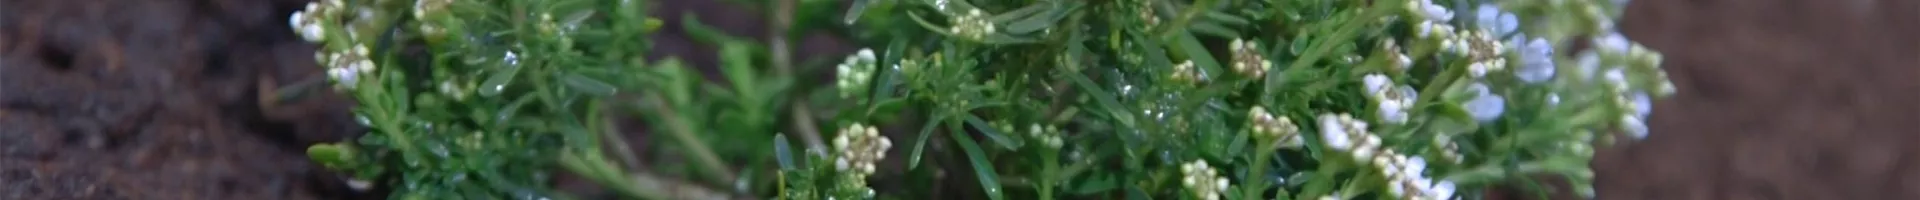 Schleifenblume - Einpflanzen im Garten (thumbnail).jpg